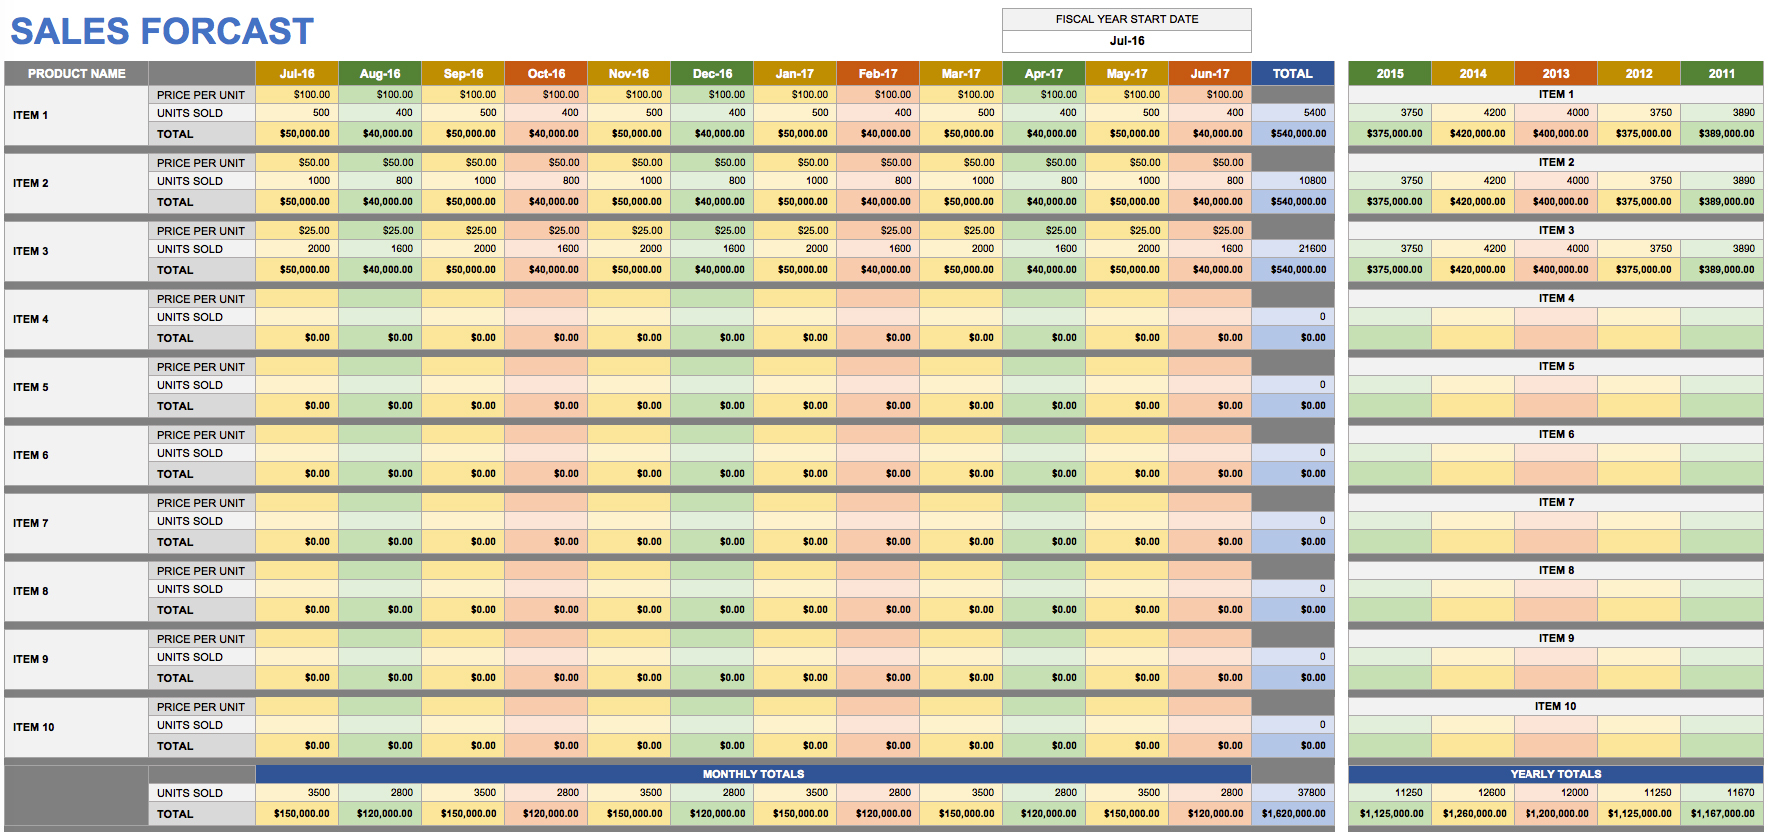 Sales Forecast Spreadsheet Sample Score For Restaurant Excel in Sales Forecast Spreadsheet Template